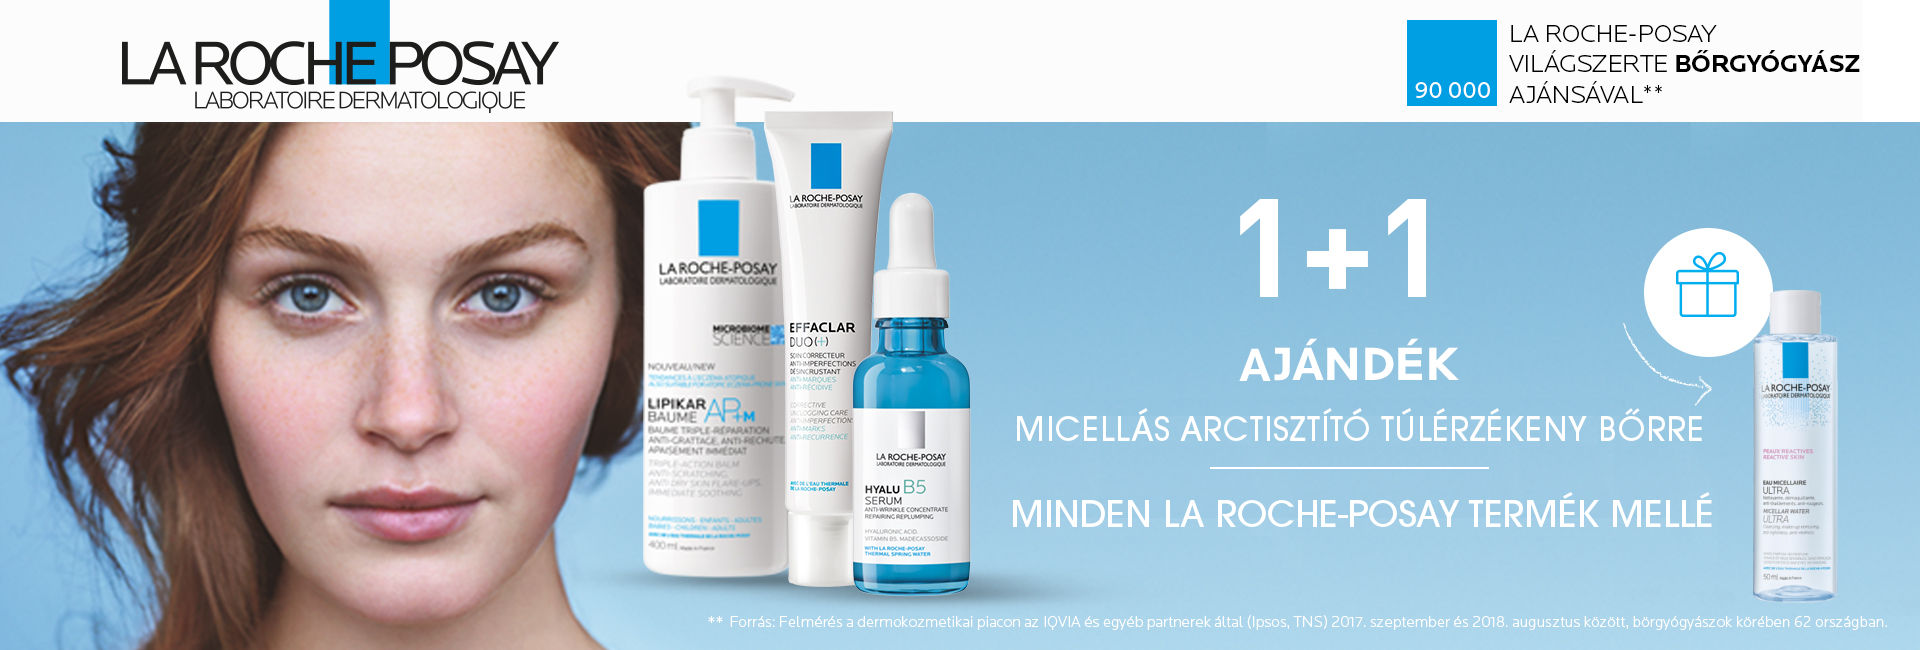 2020. augusztus 27-30. között minden La Roche-Posay termék mellé ajándékba adunk 1db La Roche-Posay Ultra micellás arctisztító túlérzékeny bőrre 50ml-t!